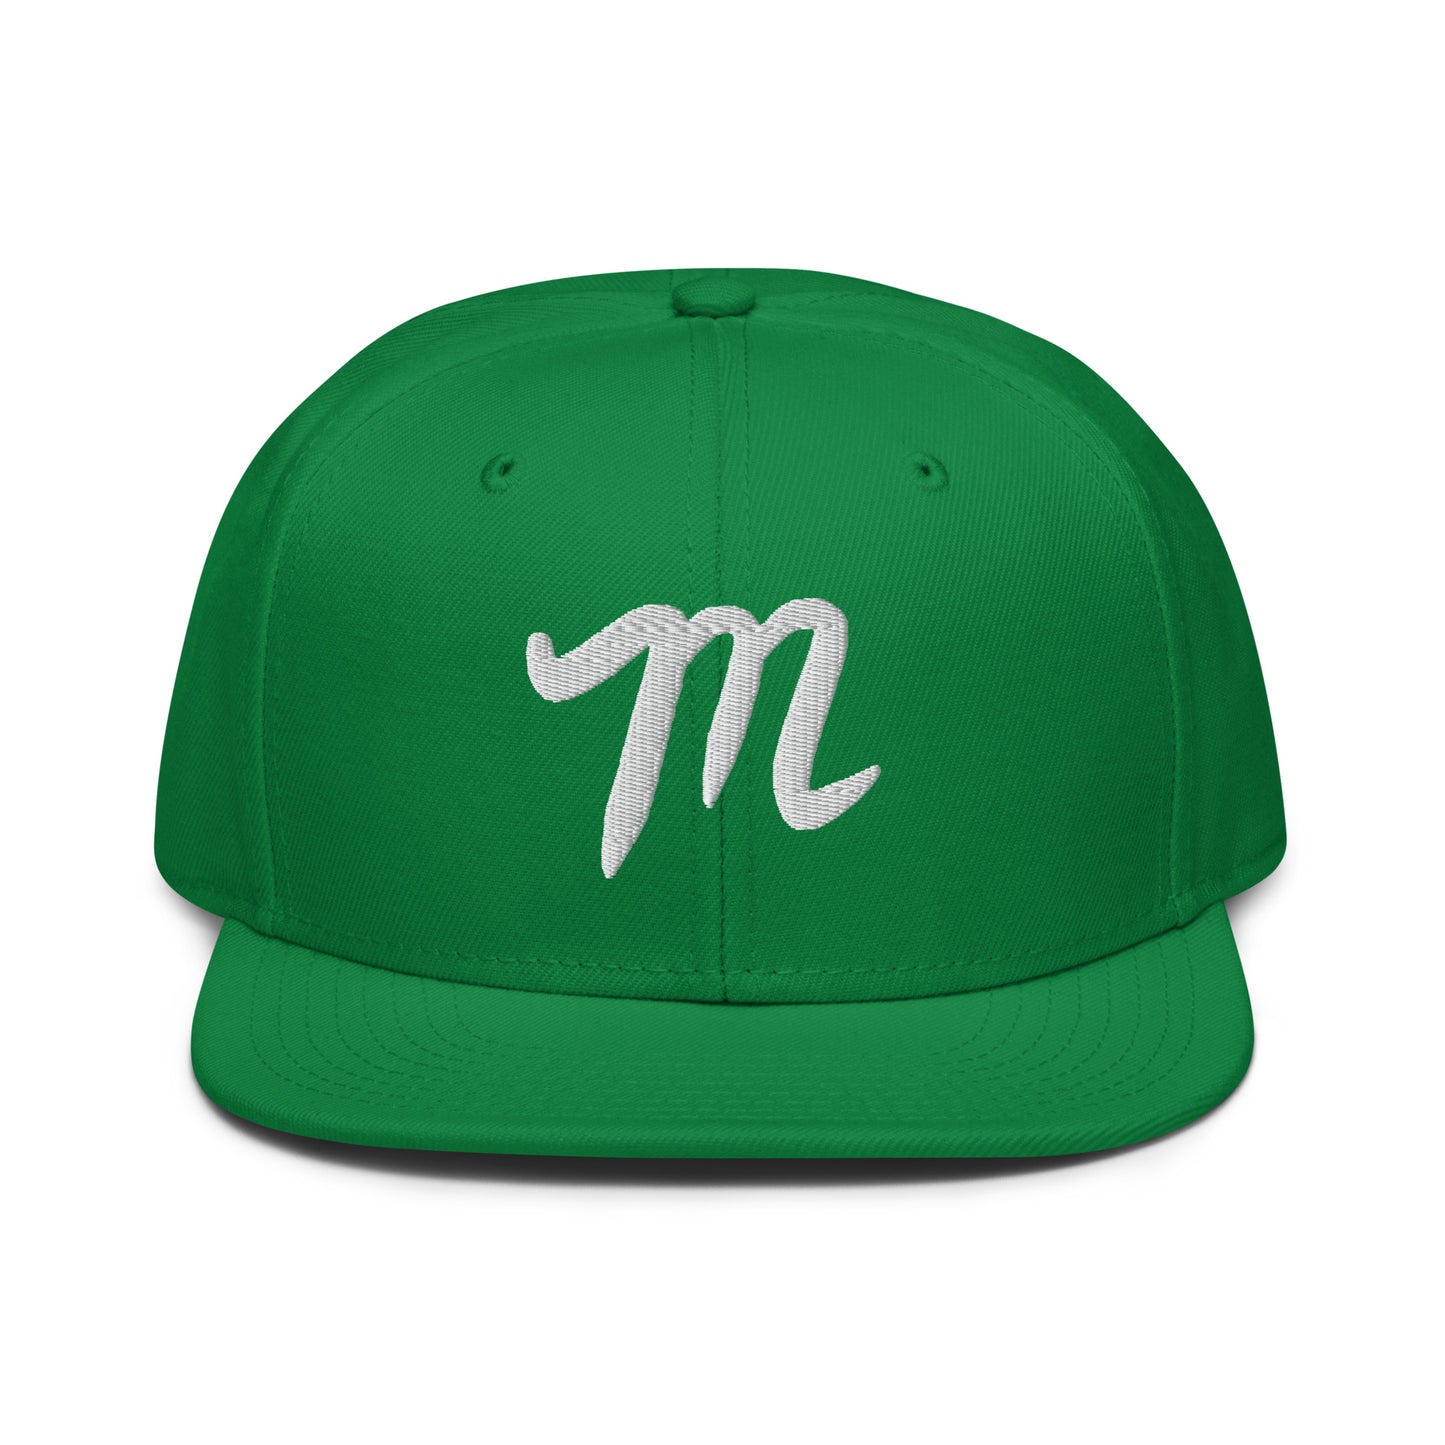 Manolo St. Patrick’s Day Snapback Hat